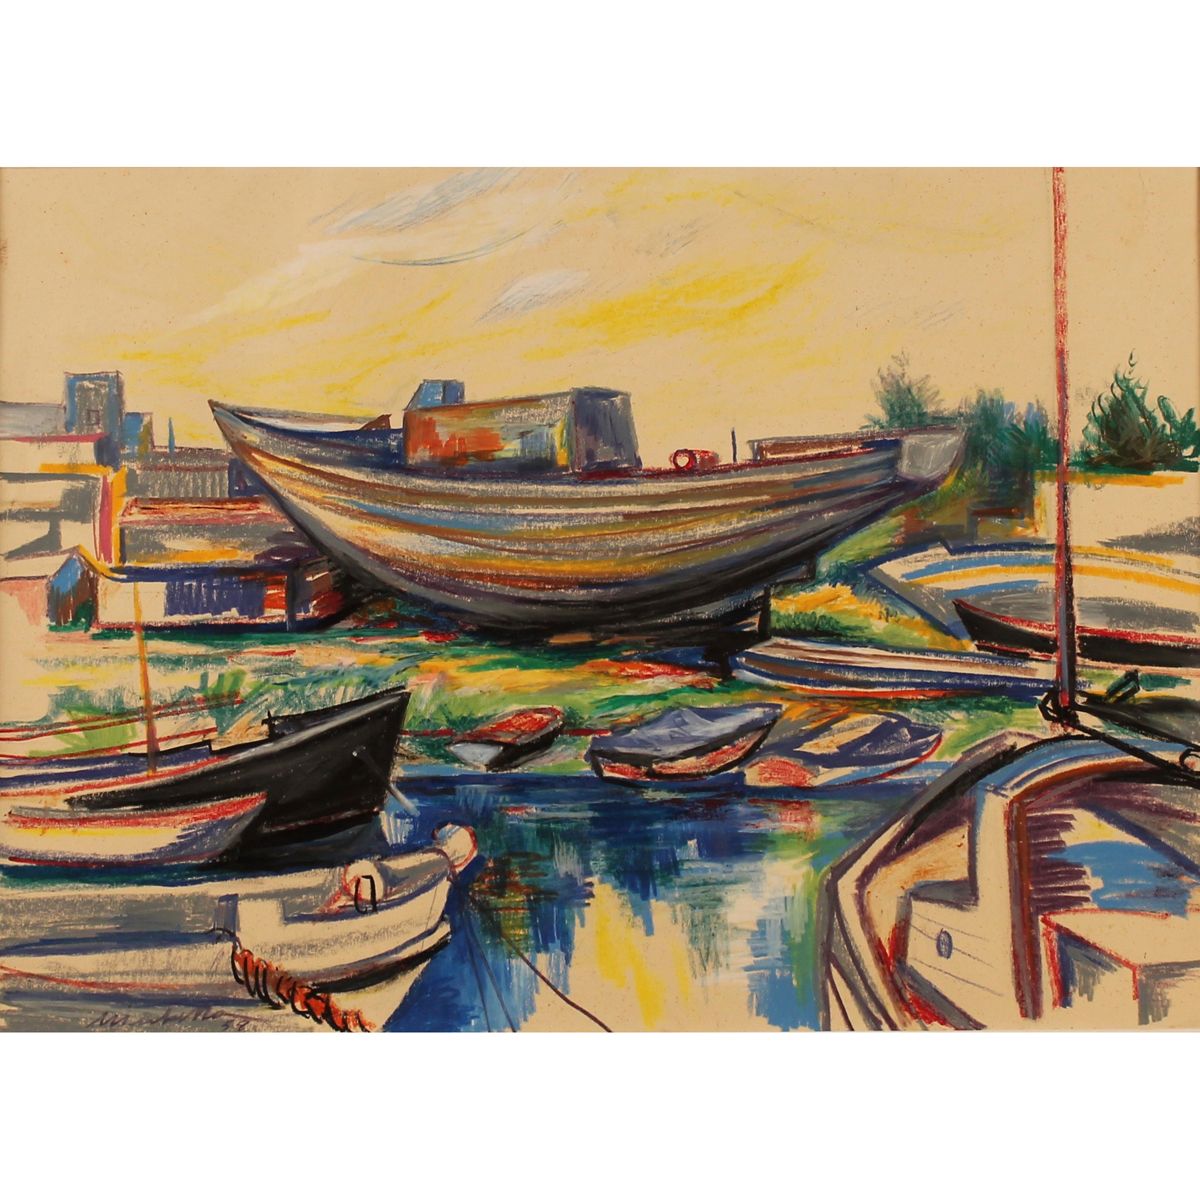 SARO MIRABELLA (1914/1972) "Barche a secco" - "Dry boats" 纸上粉笔画。日期为58年。Cm 50x70
&hellip;